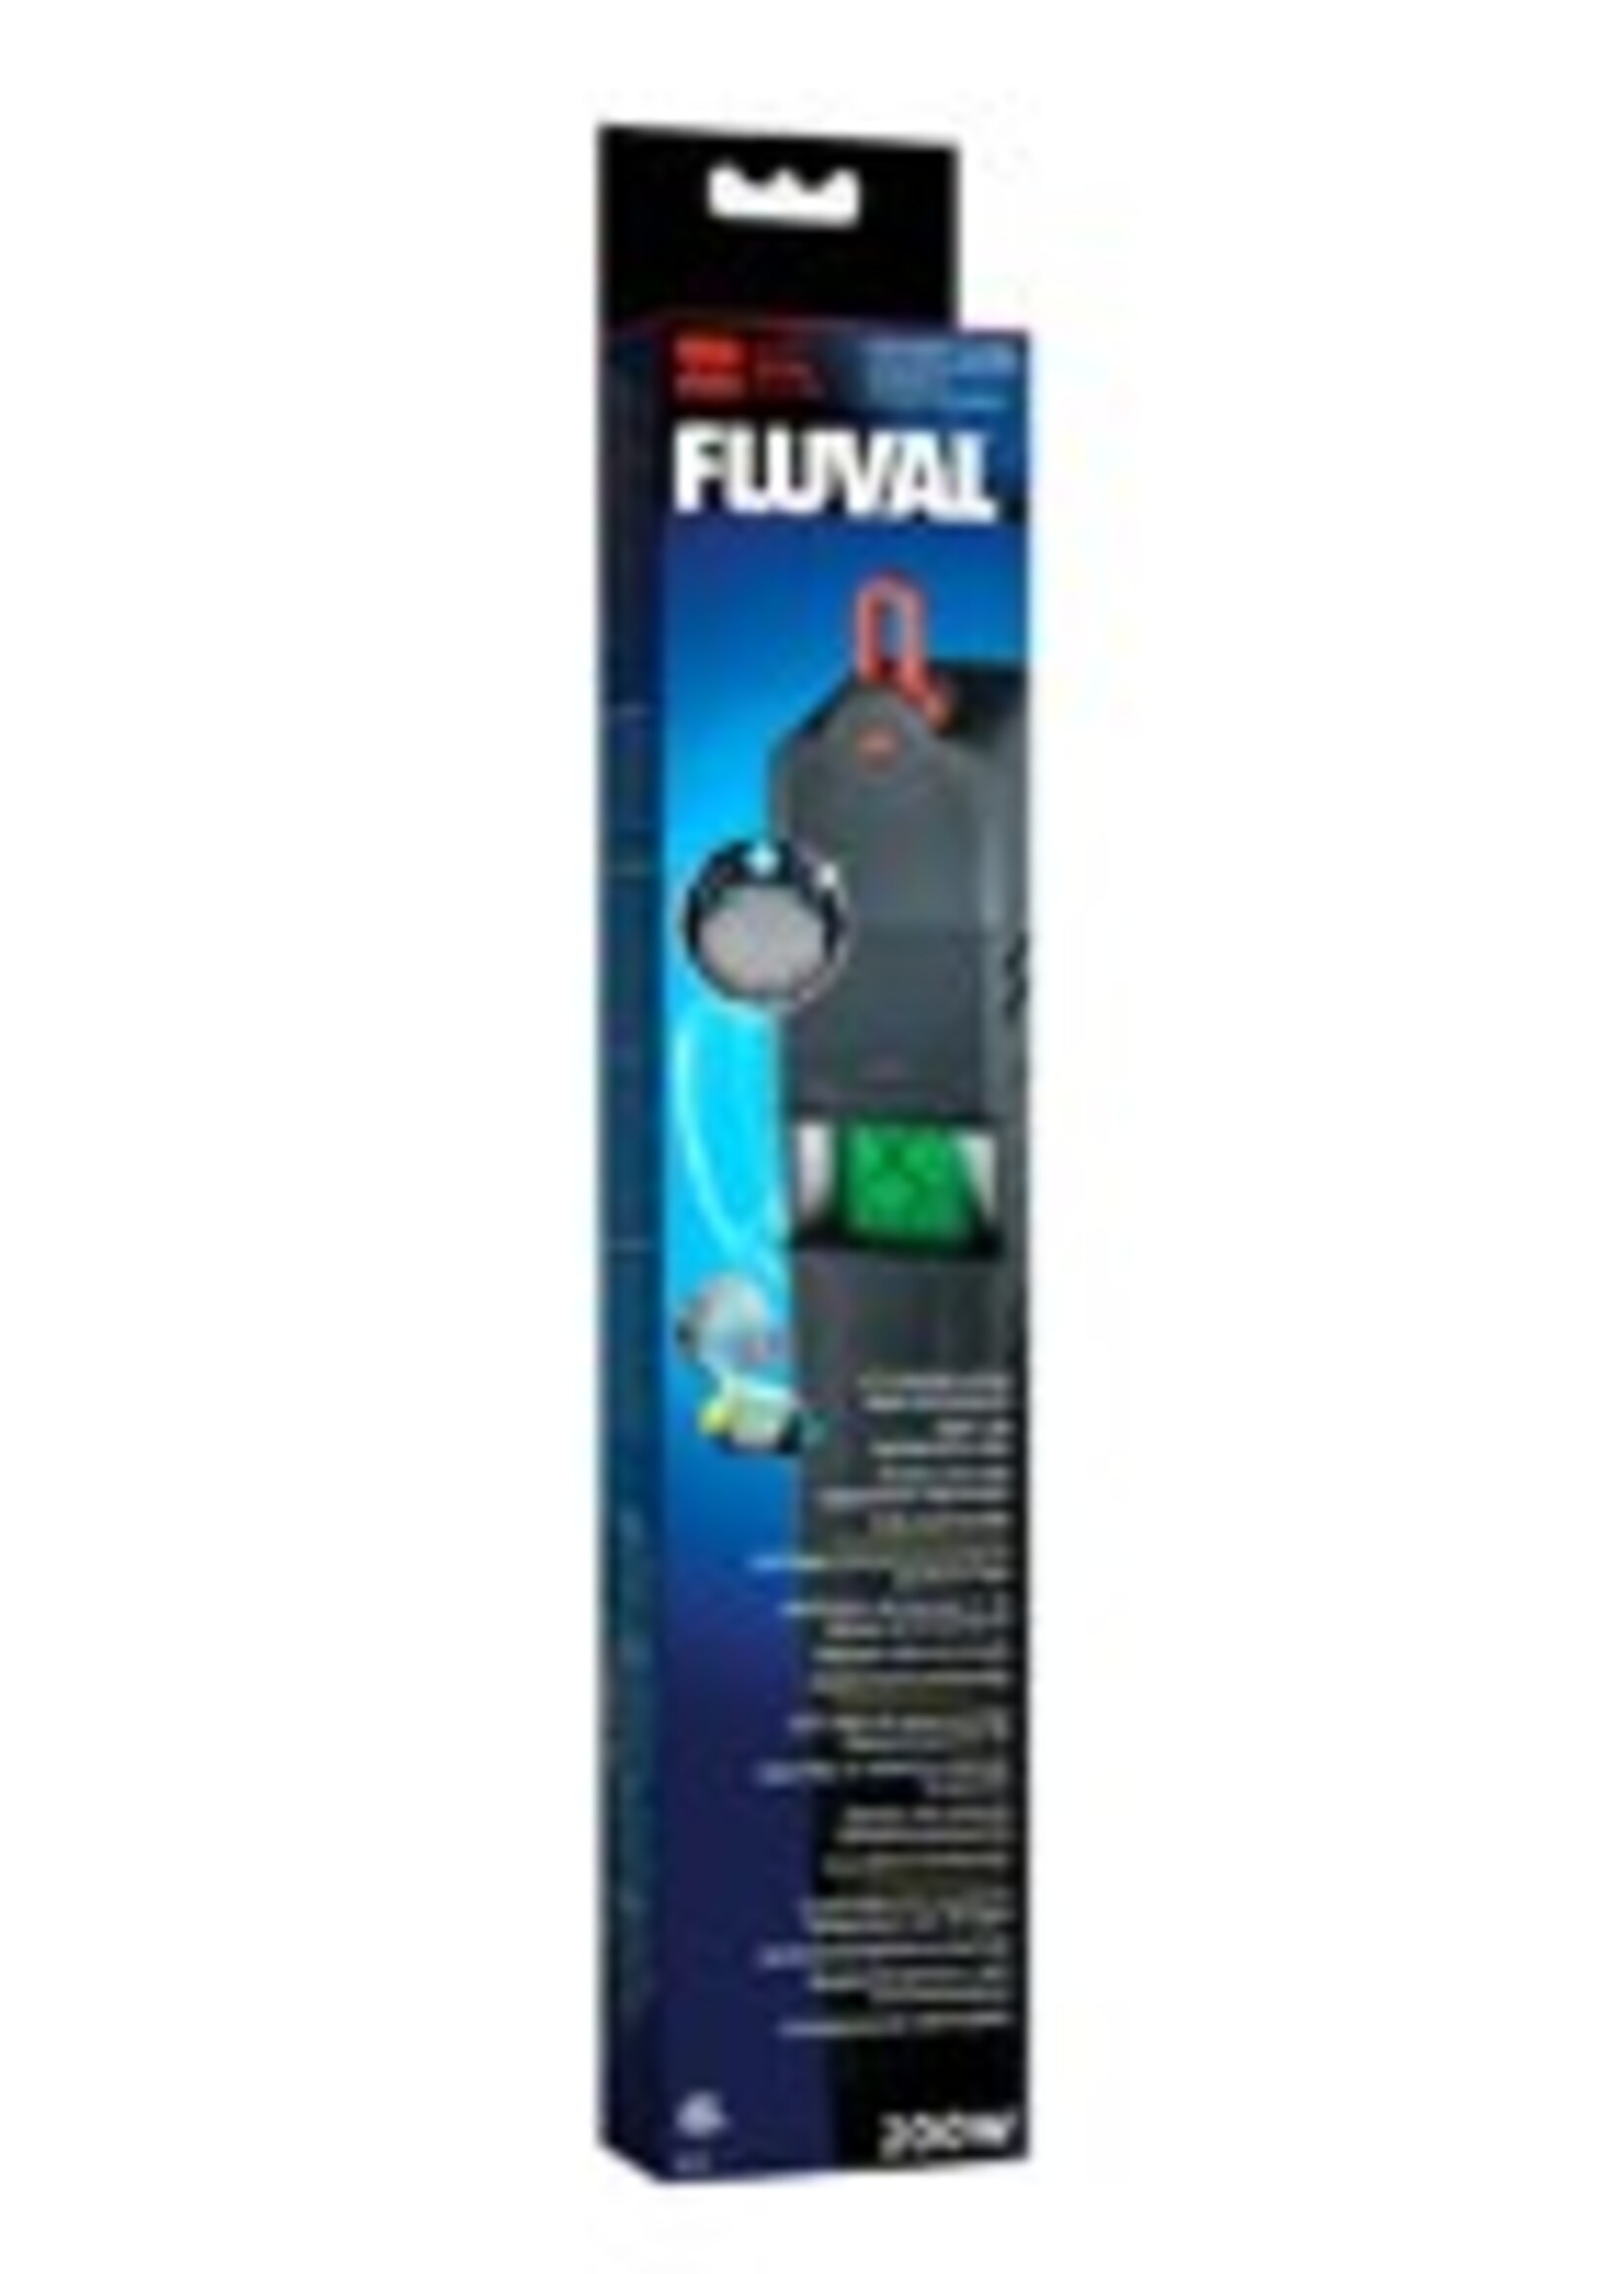 Fluval Fluval E 200Watt Electronic Heater